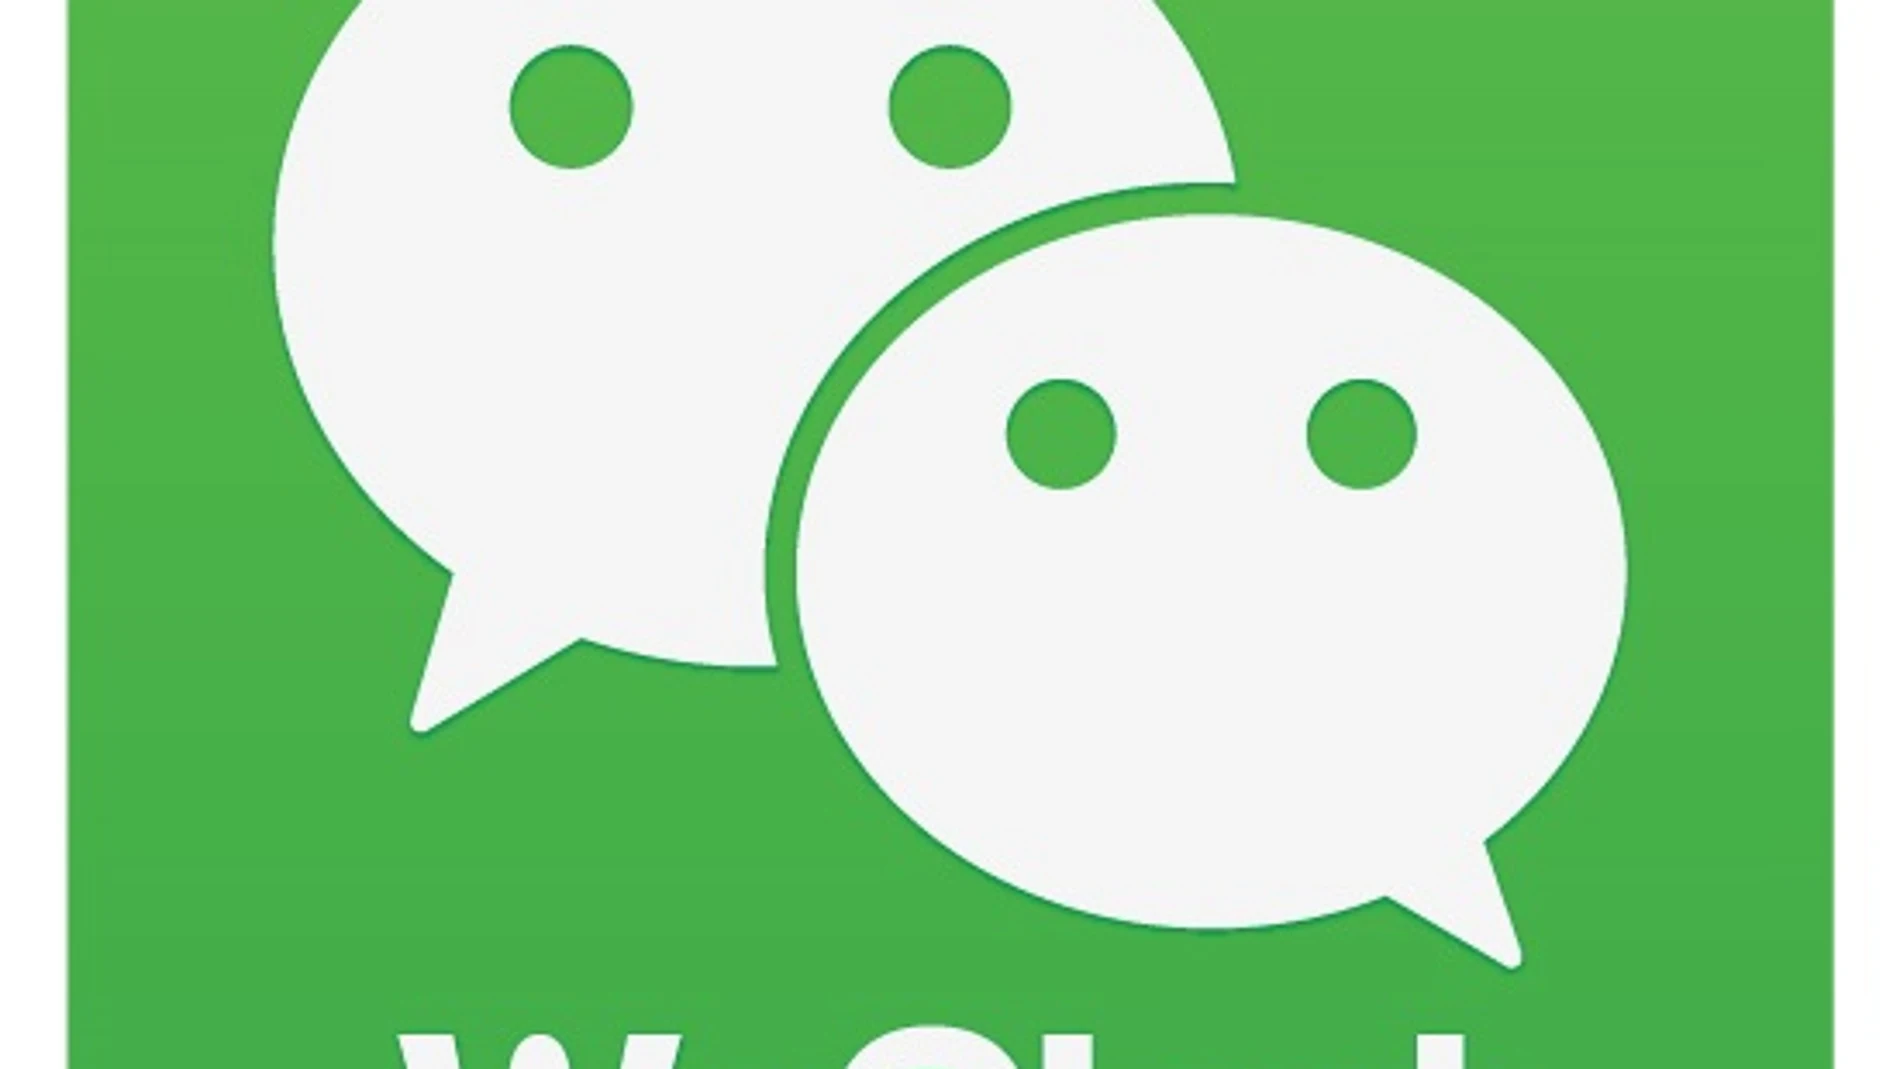 Aplicación de mensajería para móviles WeChat, un equivalente chino a WhatsApp,